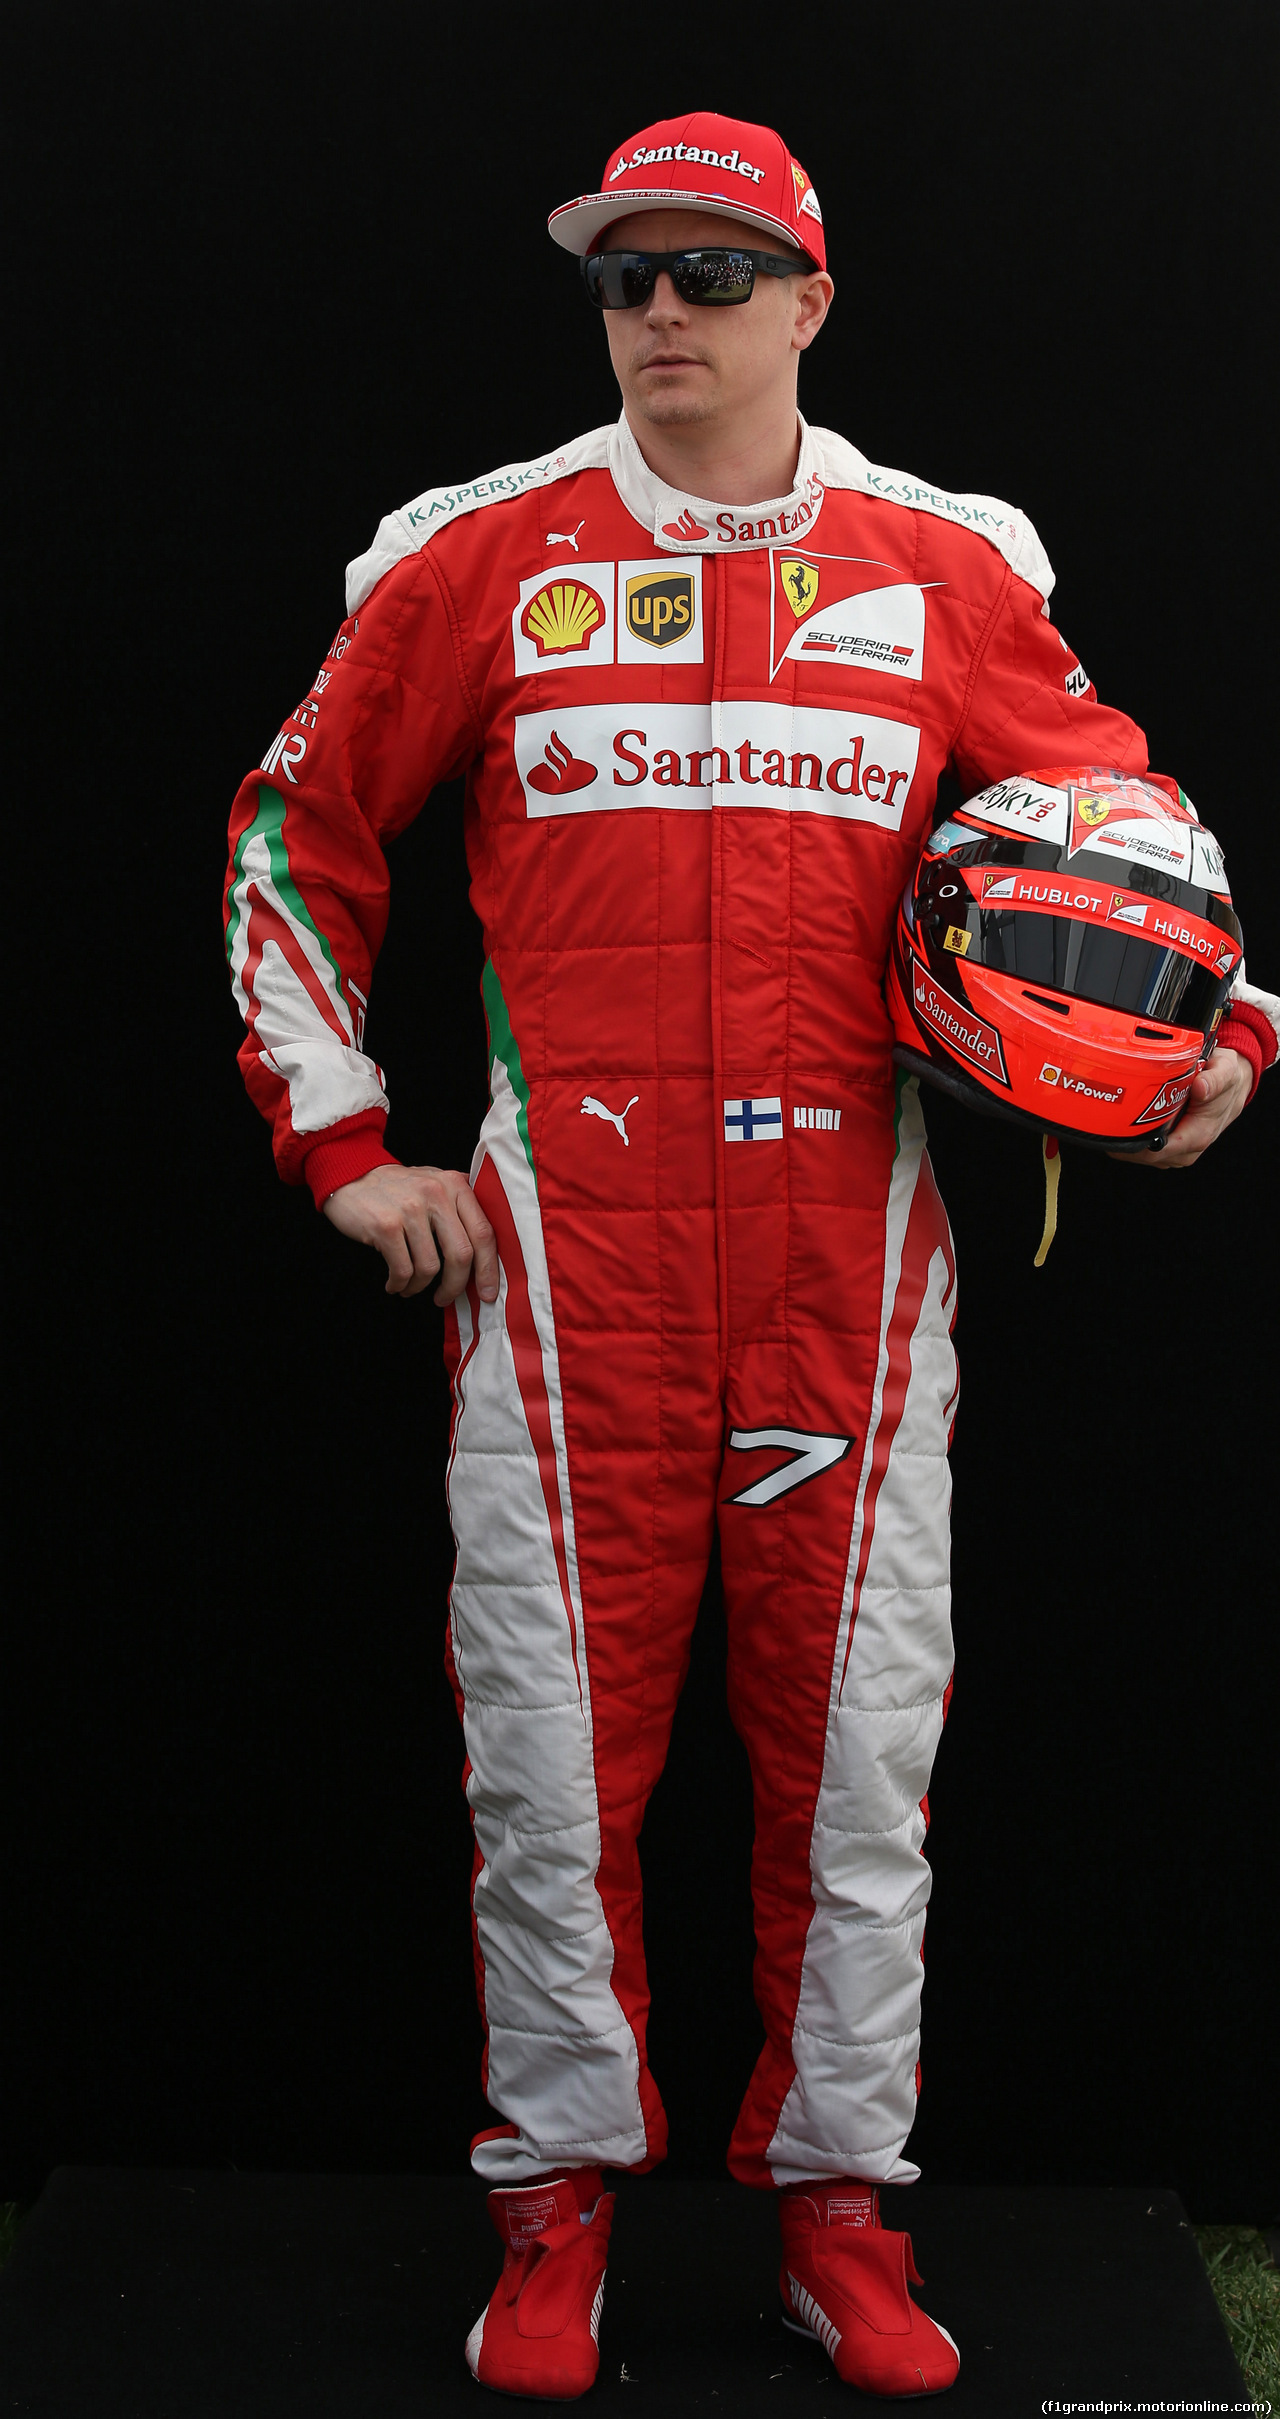 GP AUSTRALIA, 17.03.2016 - Kimi Raikkonen (FIN) Ferrari SF16-H